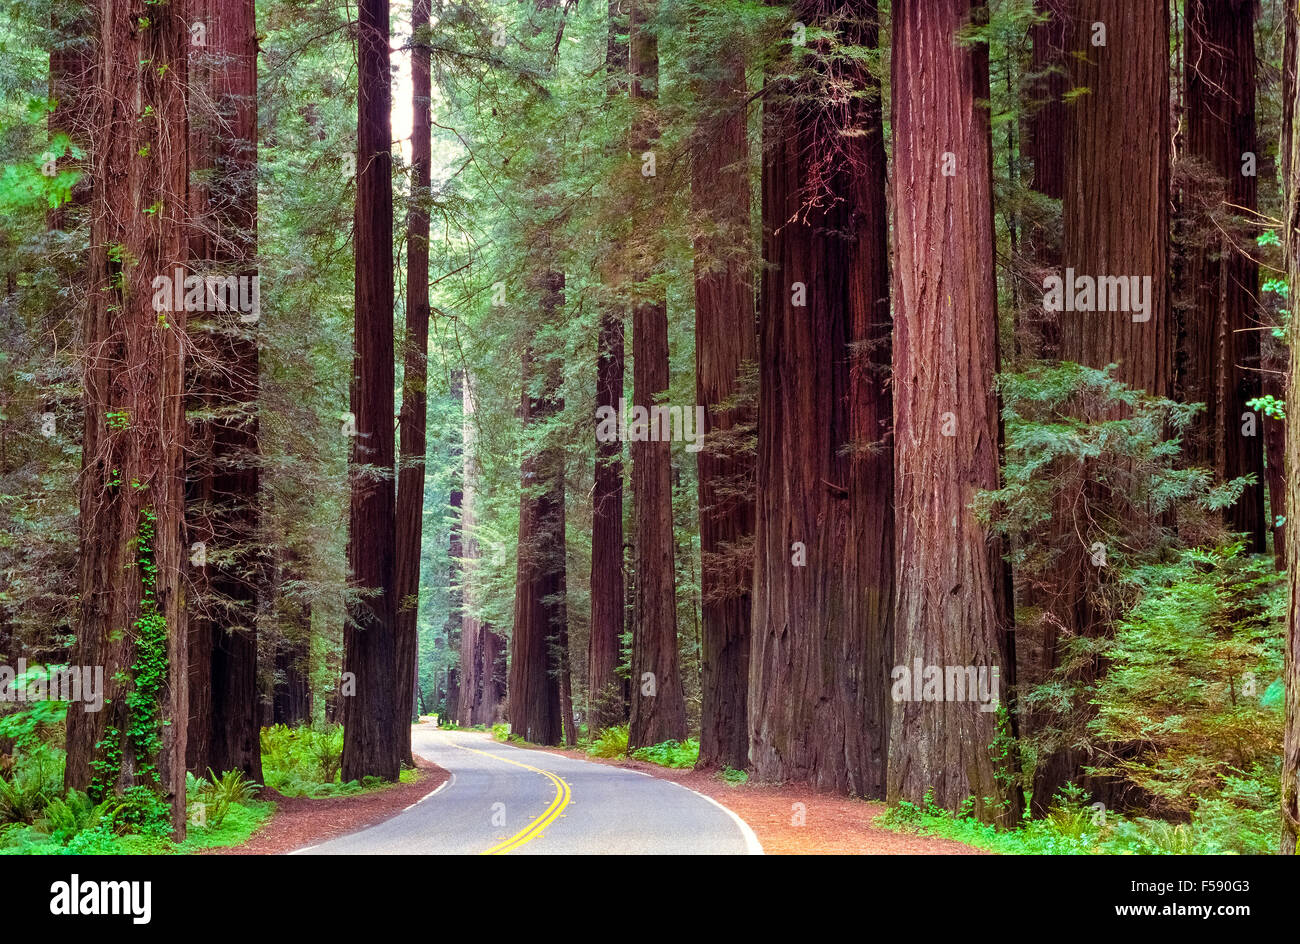 La Scenic 32-Mile Avenue dei giganti strada si snoda attraverso alcune delle più maestose antichi oliveti redwood nella Humbolt Redwoods State Park nel nord della California, Stati Uniti d'America. Dei tre tipi di redwoods, solo la costa Redwoods (Sequoia sempervirens) sono nativi per il parco. Coast Redwoods sono tra i più alti e alcuni dei più antichi di tutte le specie di alberi in tutto il mondo. Foto Stock